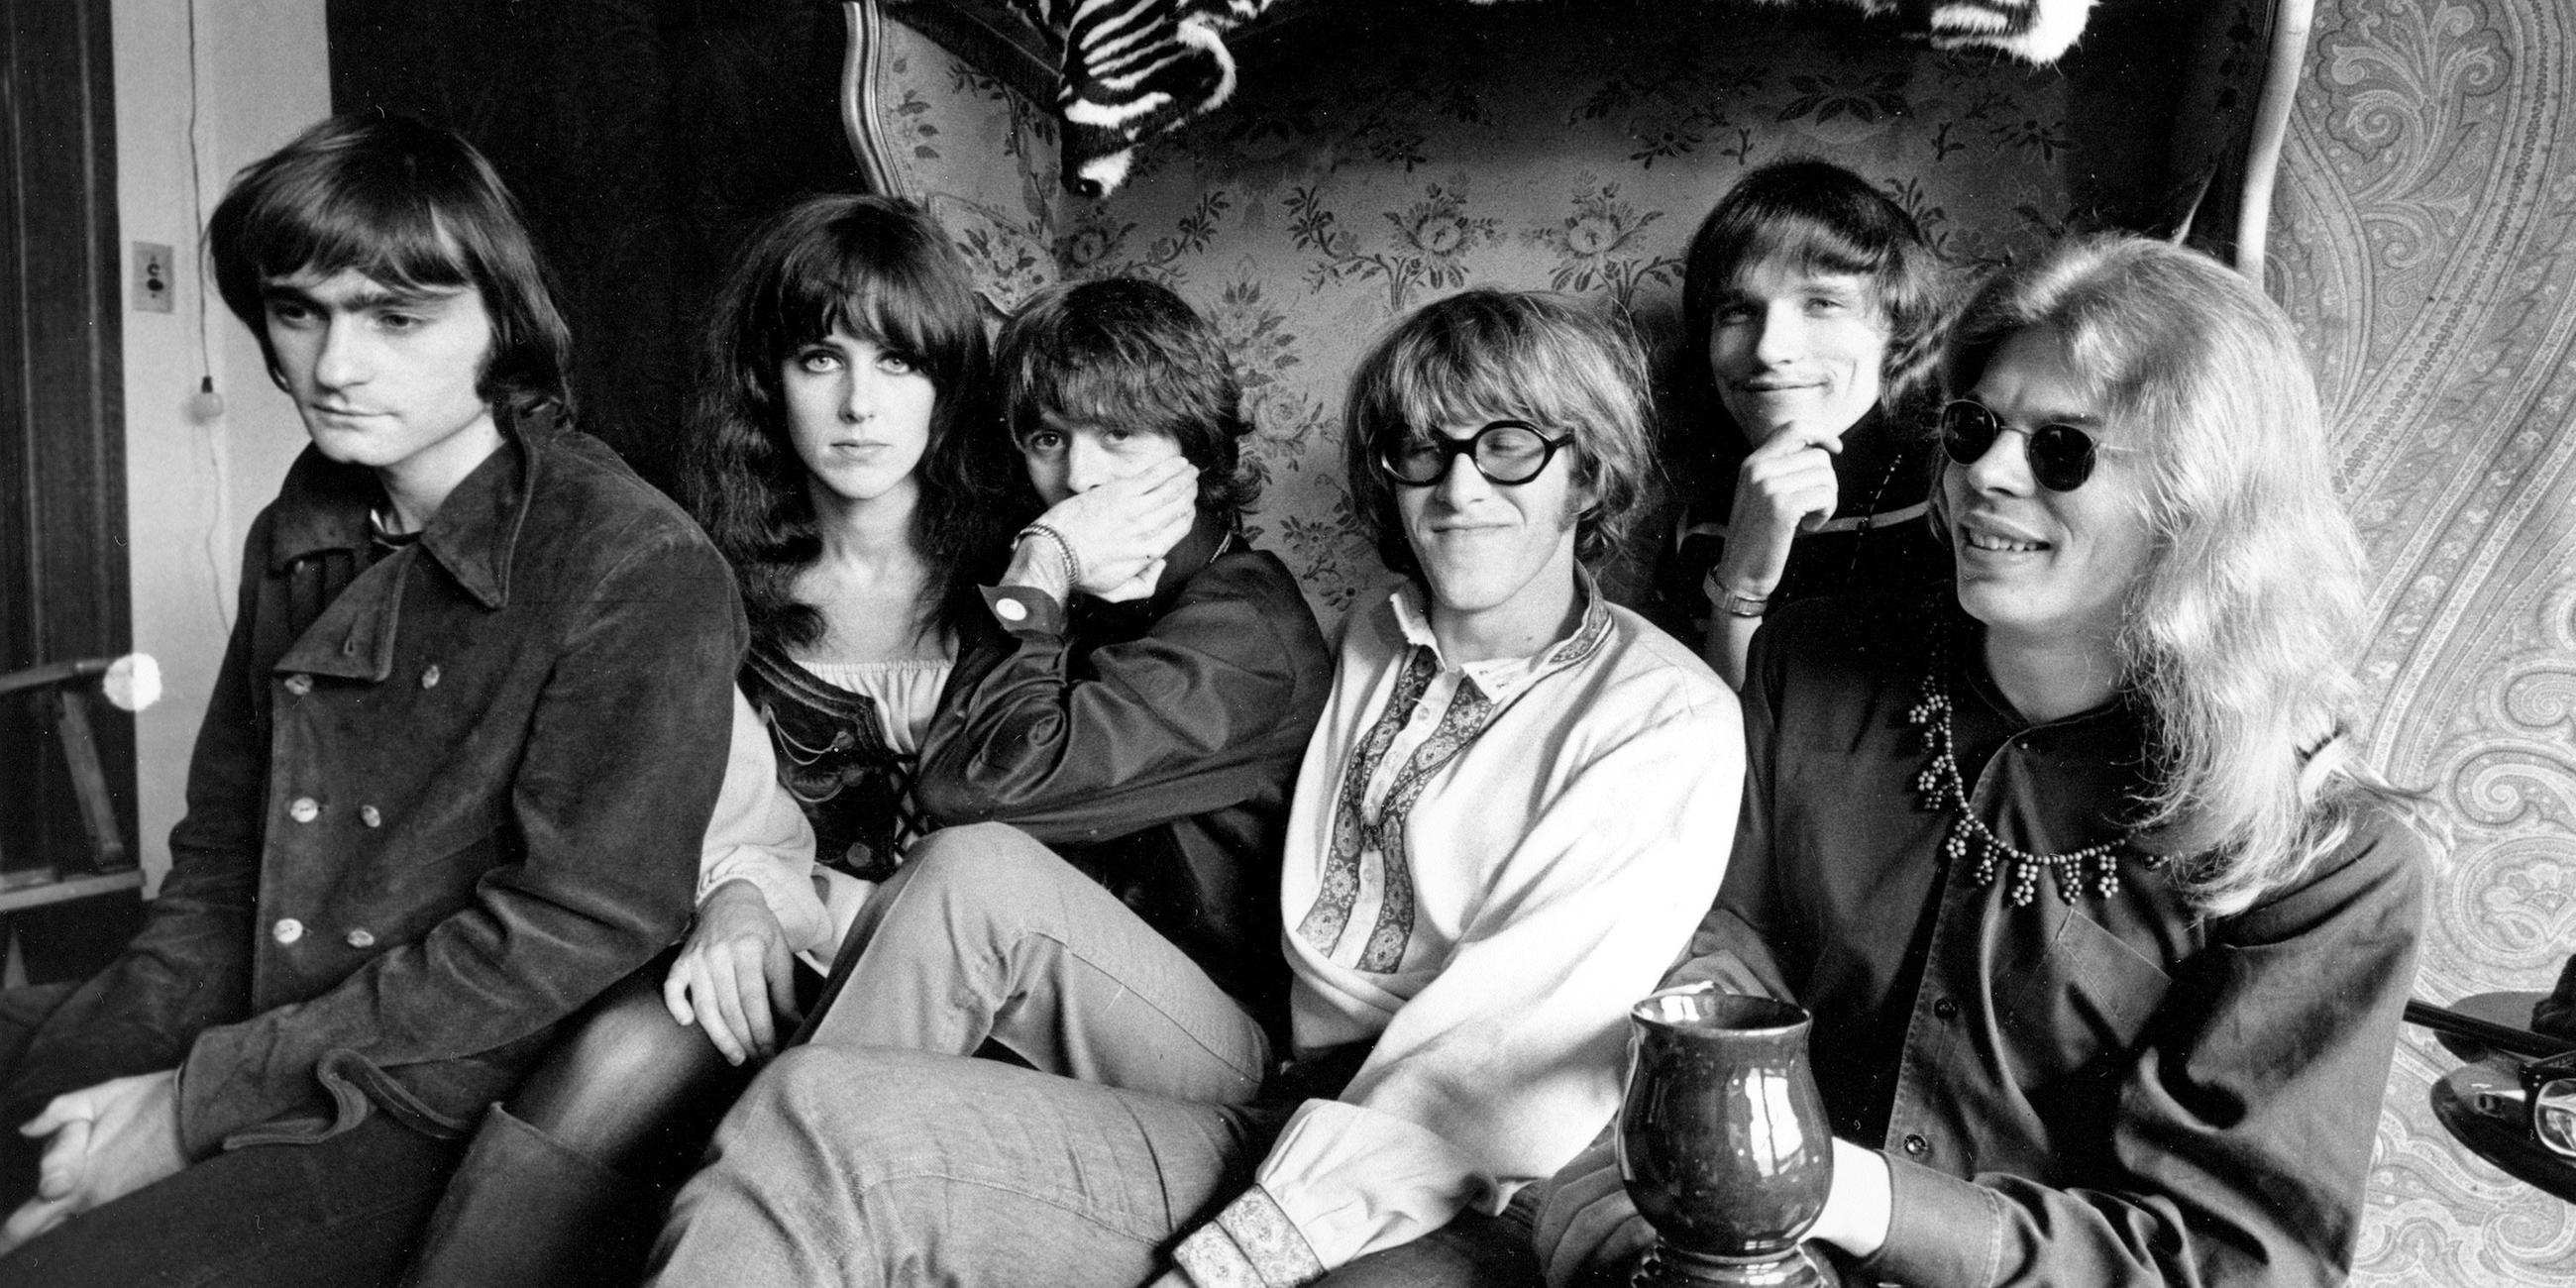 Die Band Jefferson Airplane, aufgenommen am 08.03.1968 in San Francisco (USA)